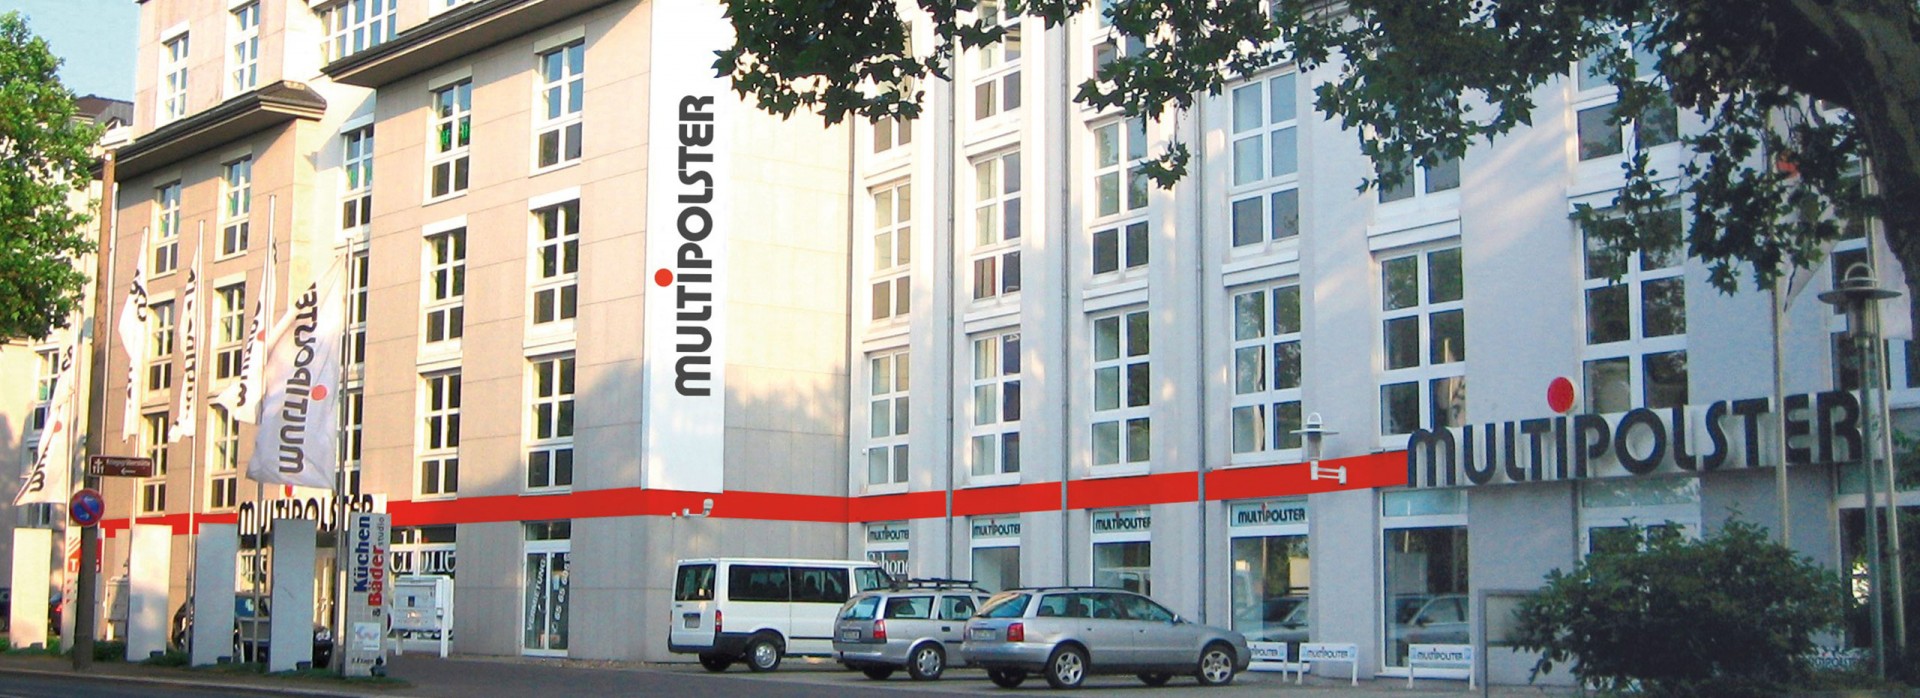 Bild 1 Multipolster -  Dresden Bremer Str. in Dresden